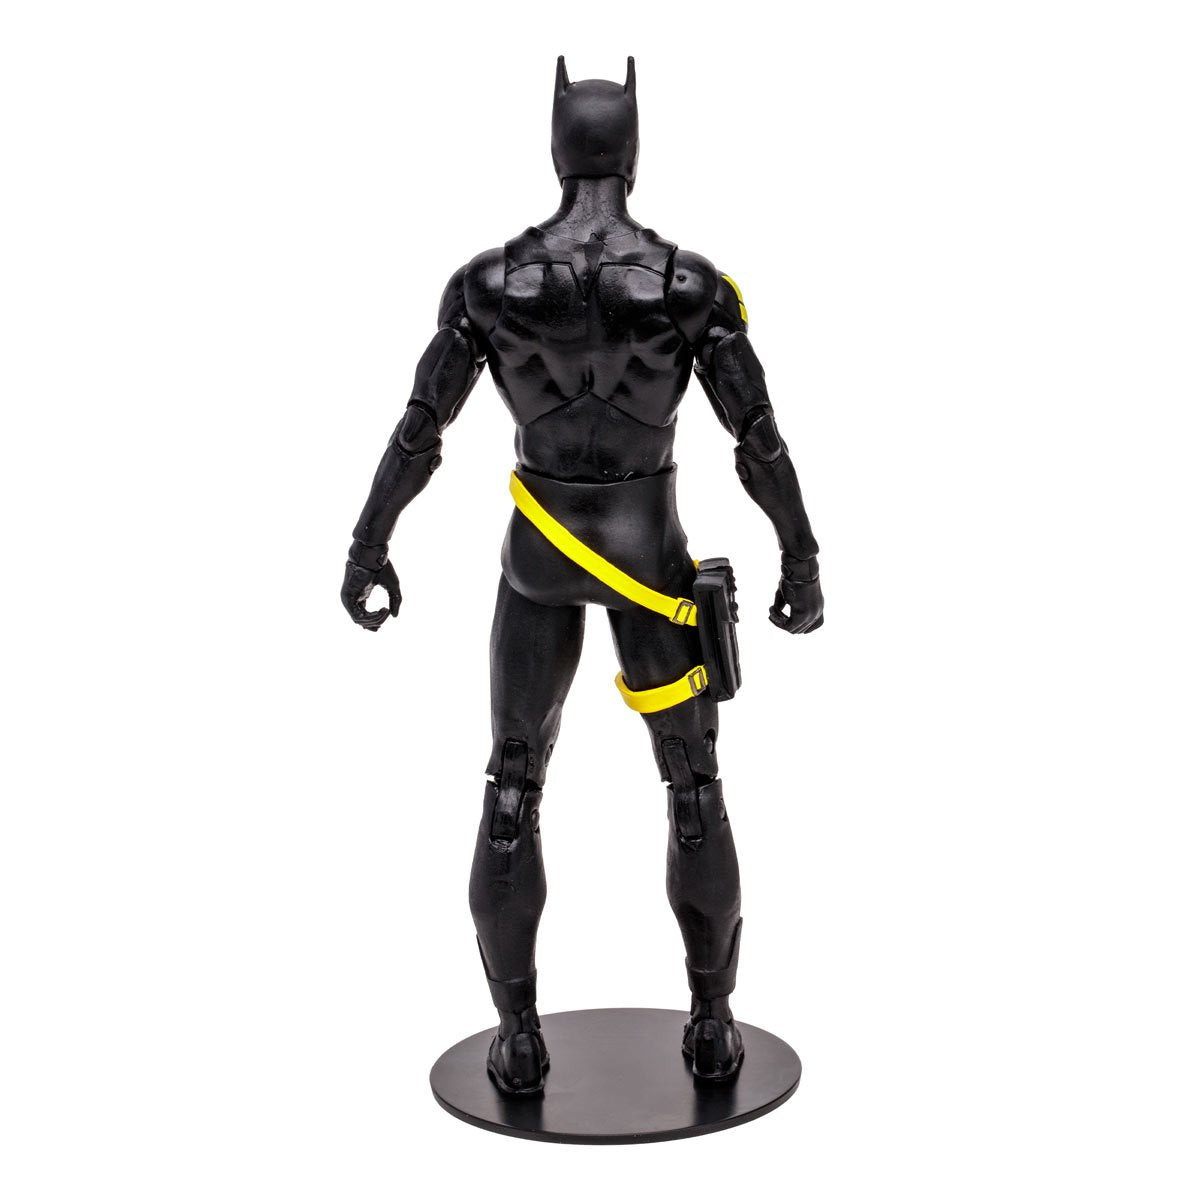 McFarlane Toys  DC Multiverse Wave 14 Jim Gordon as Batman Batman: Endgame 7-Inch Scale Action Figure